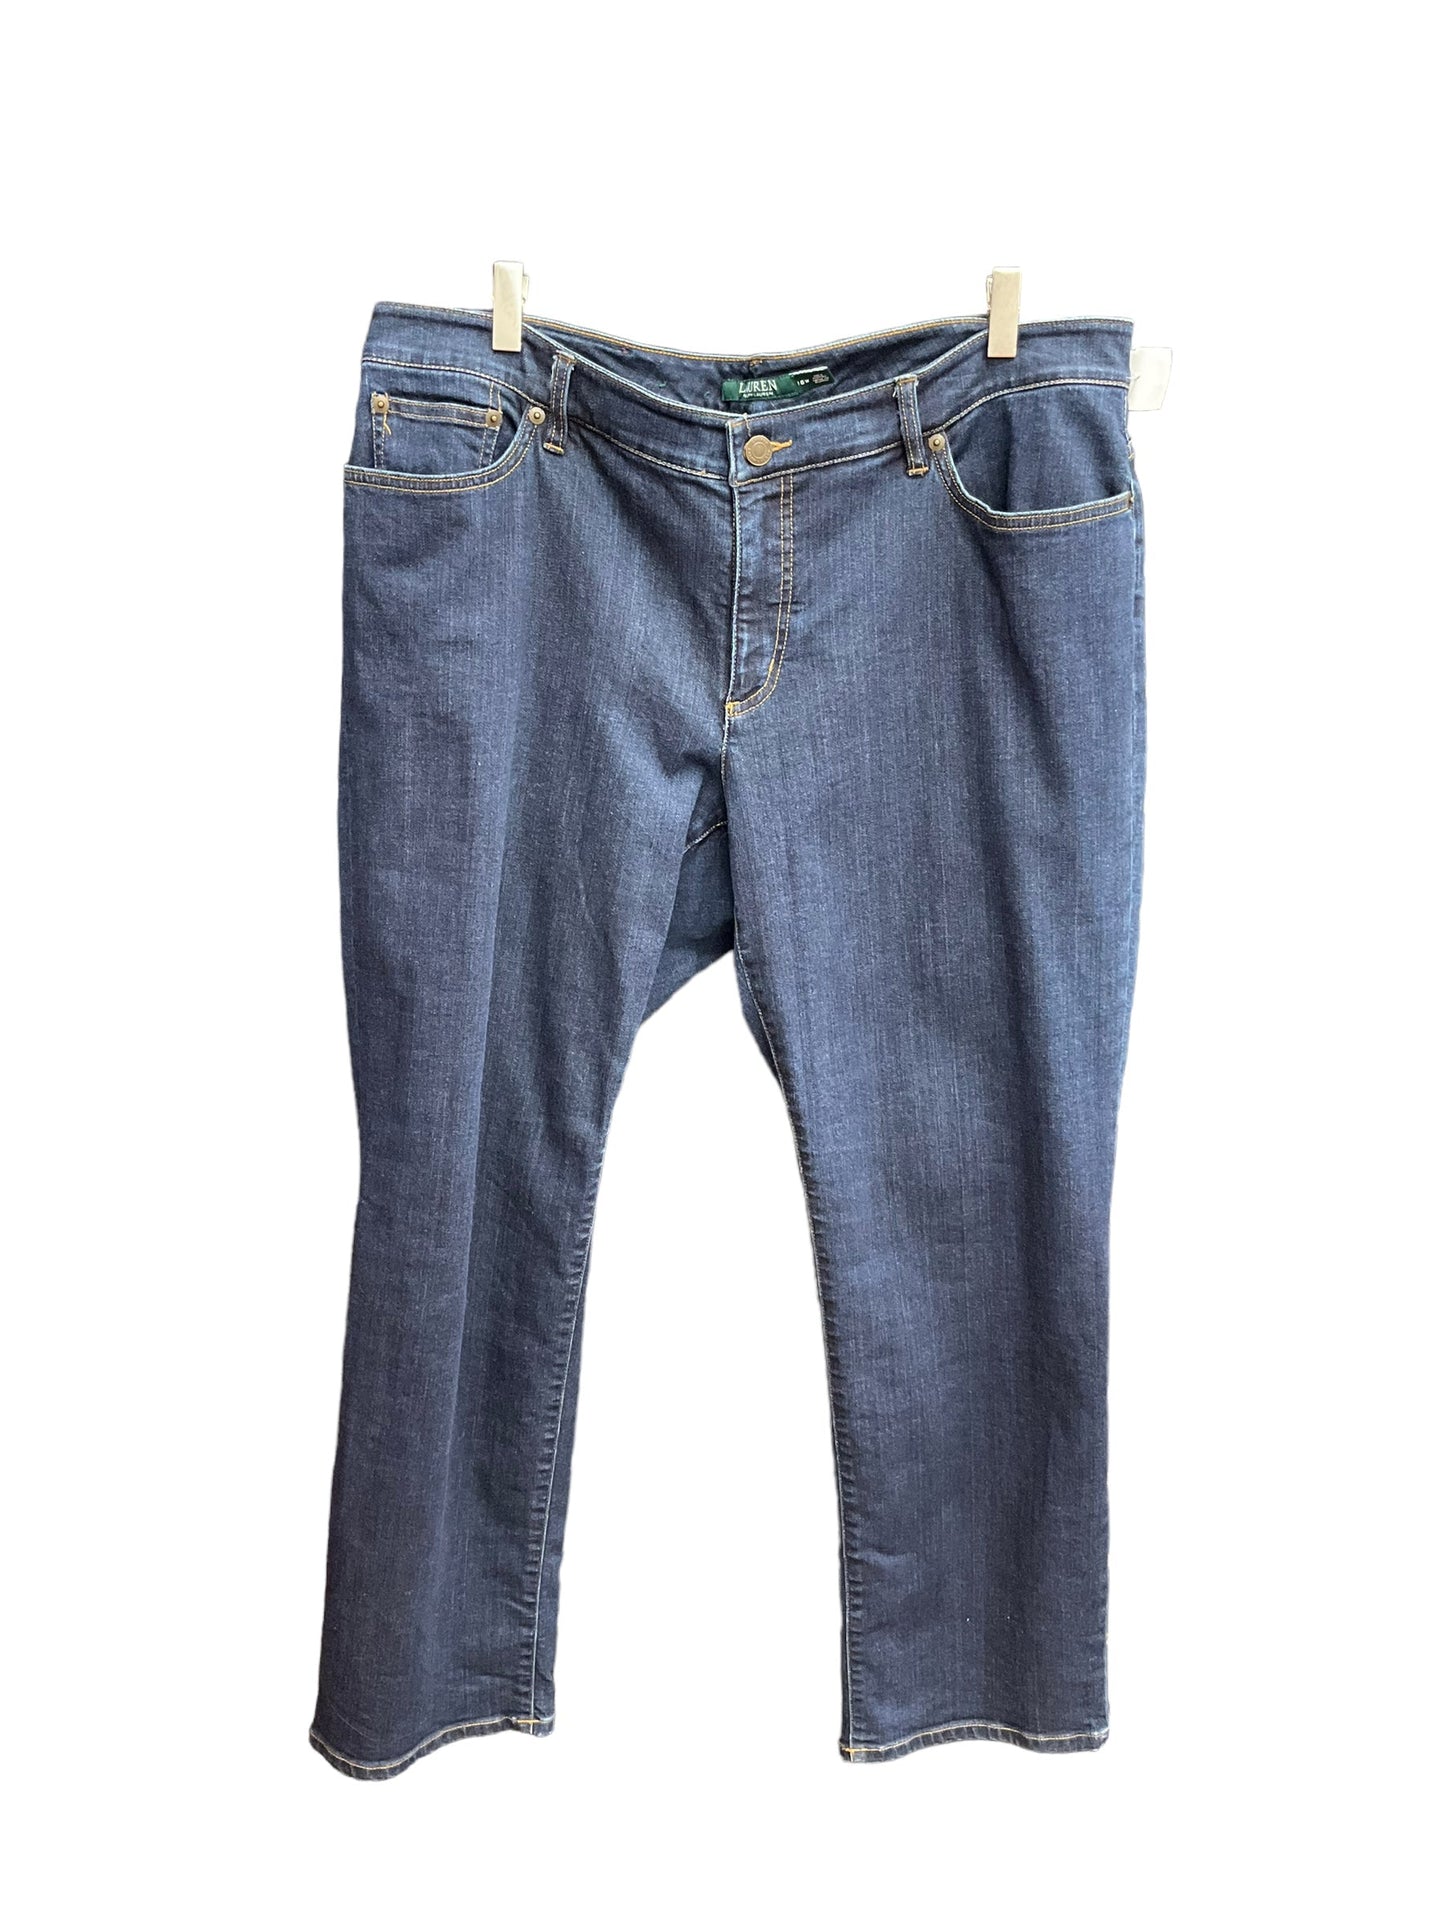 Denim Jeans Straight Ralph Lauren, Size 18